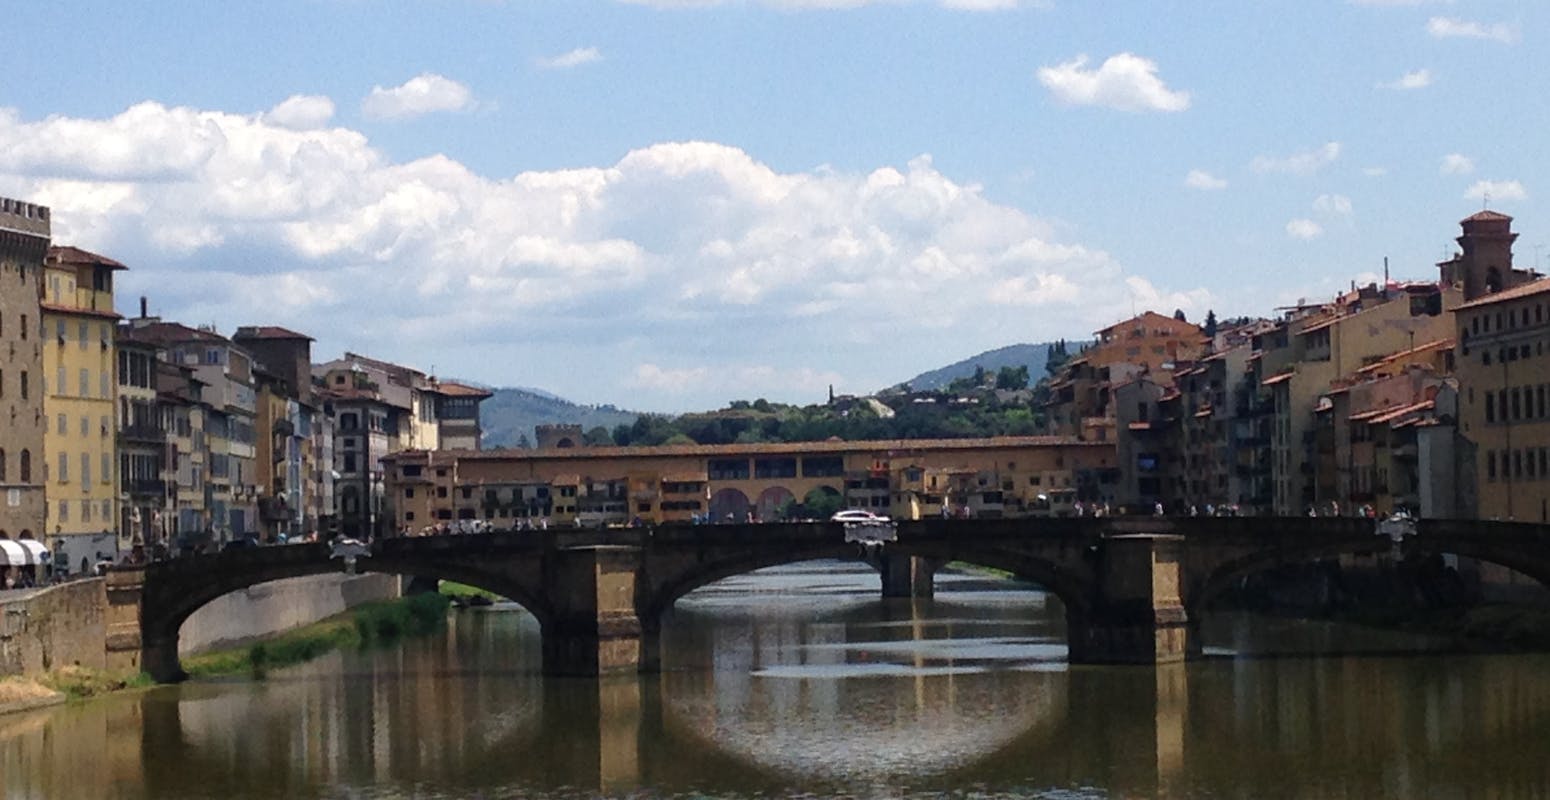 Unique Biscioni Gioielli experience for Ponte Vecchio